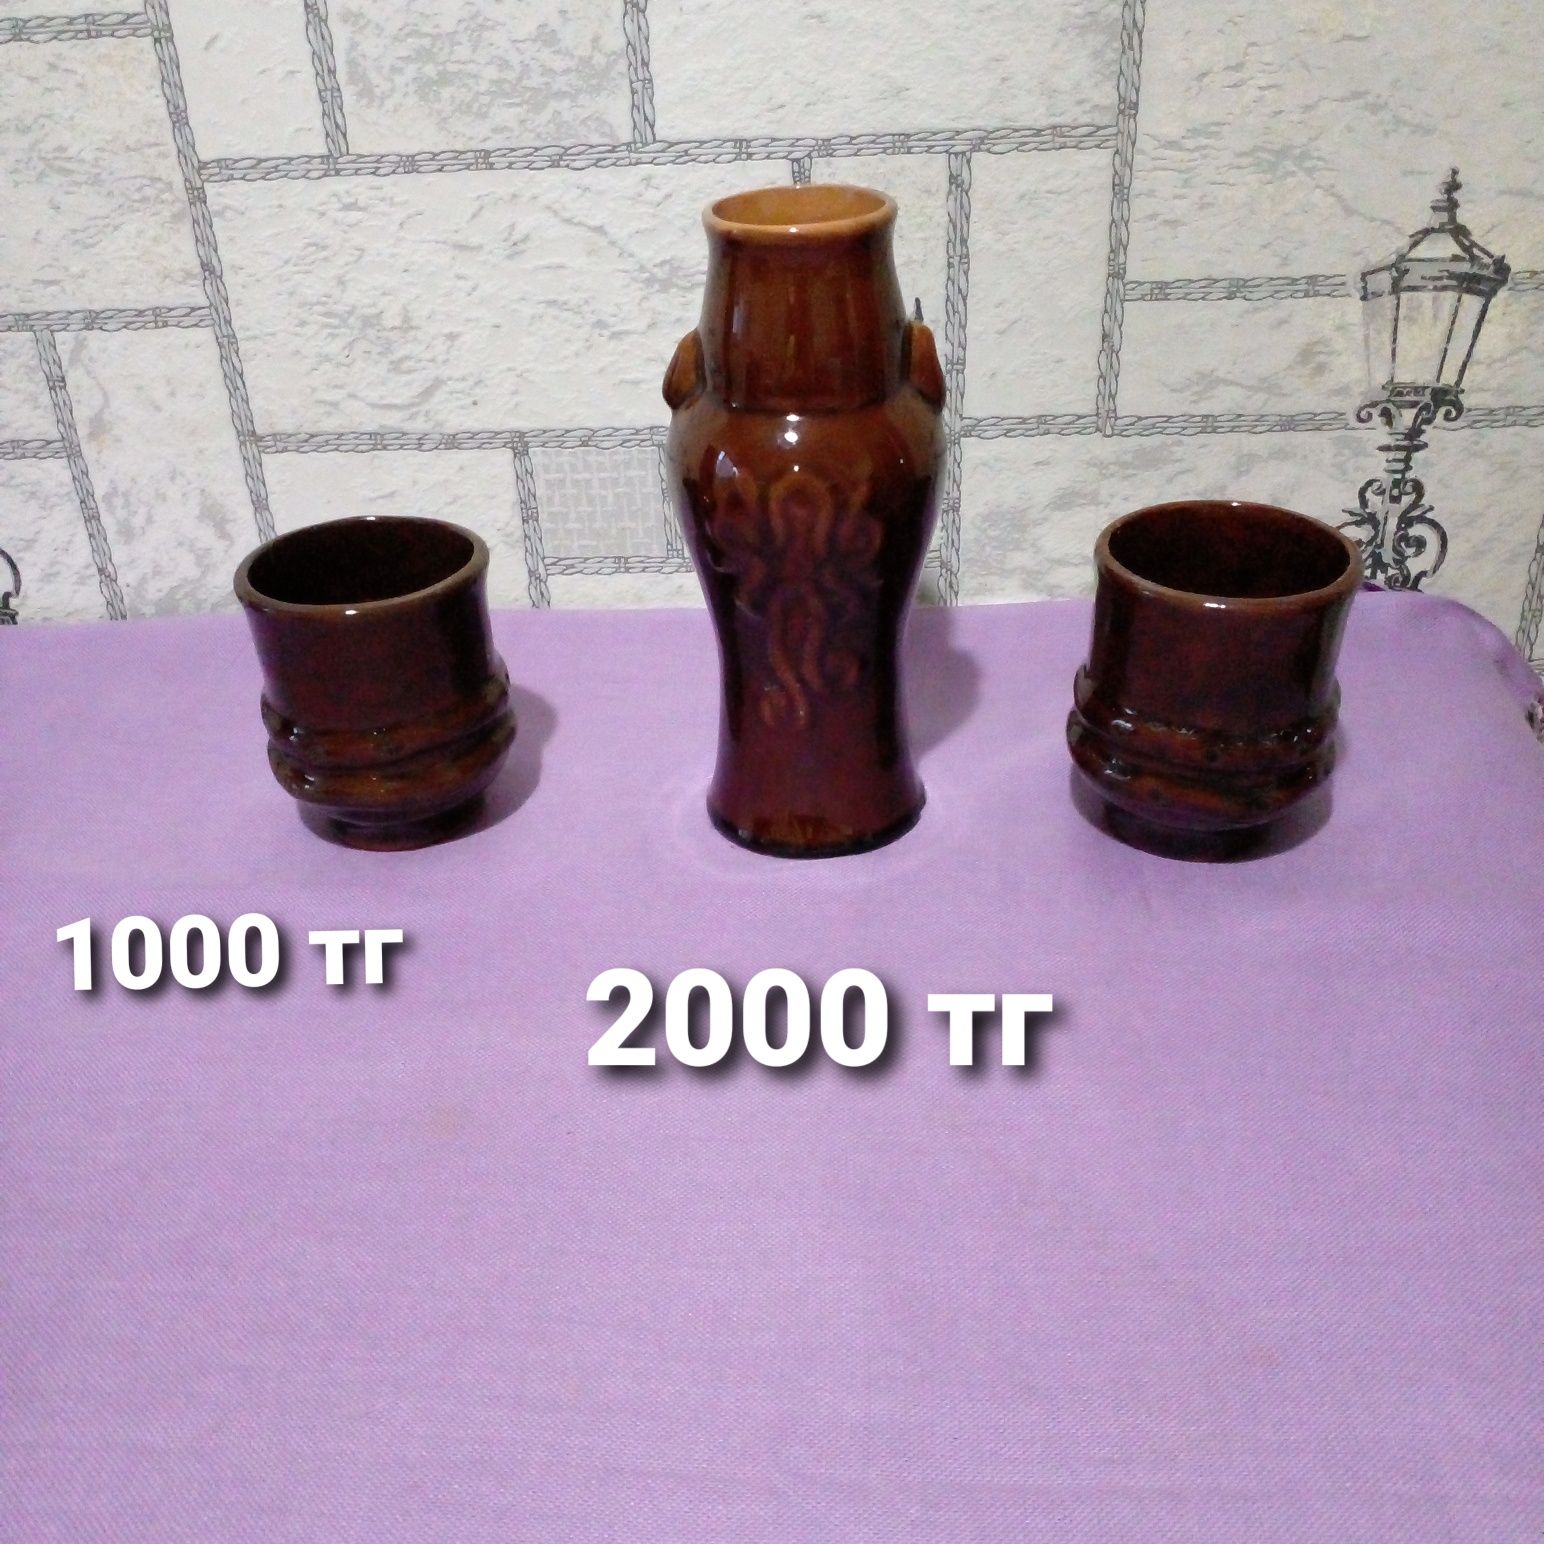 Продам советскую керамику( вазы,бочонок и др.), в идеальном состоянии